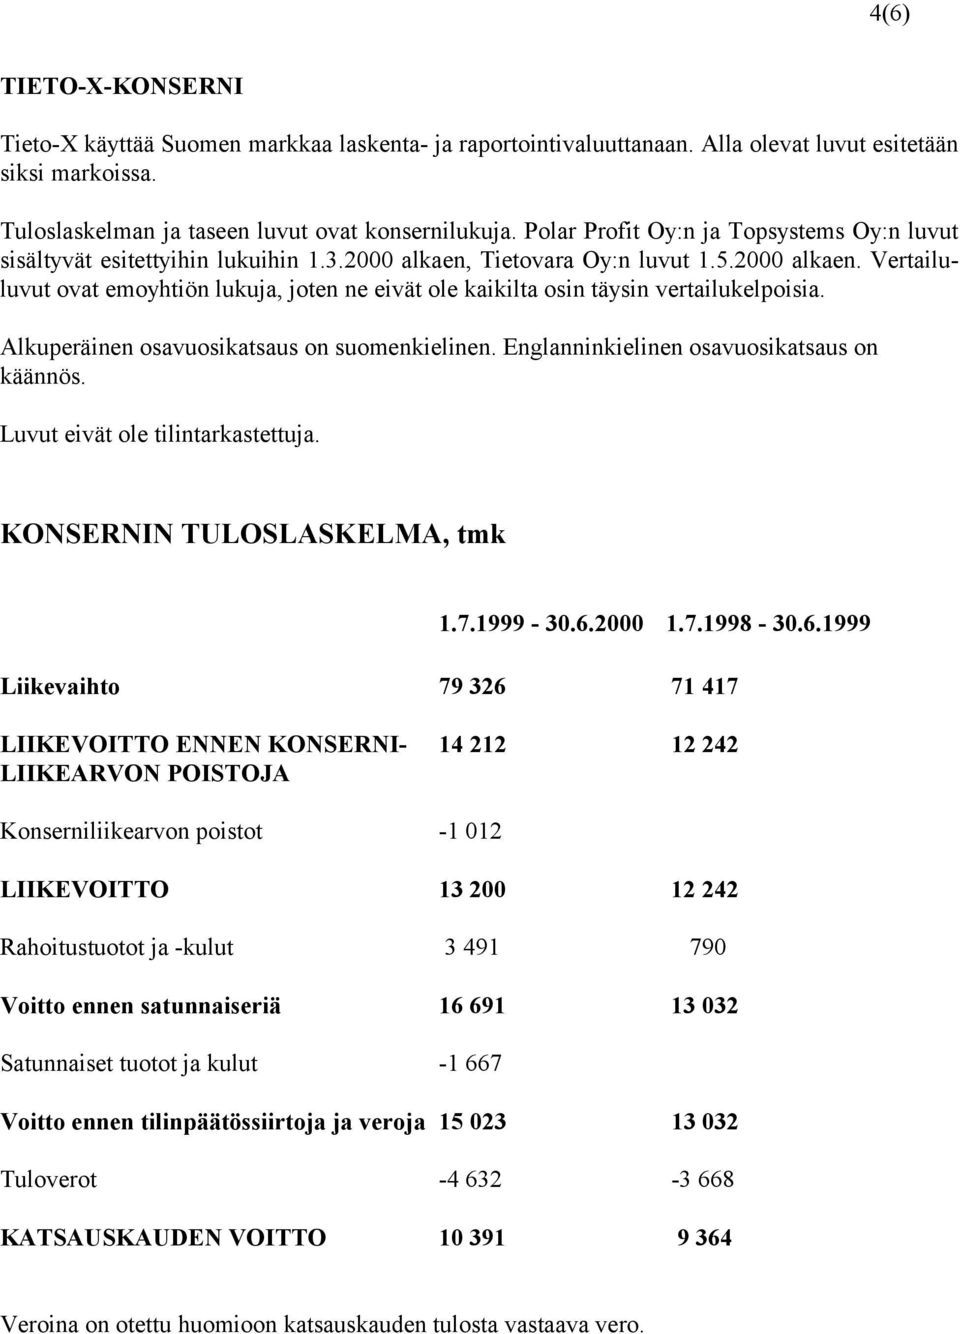 Alkuperäinen osavuosikatsaus on suomenkielinen. Englanninkielinen osavuosikatsaus on käännös. Luvut eivät ole tilintarkastettuja. KONSERNIN TULOSLASKELMA, tmk 1.7.1999-30.6.